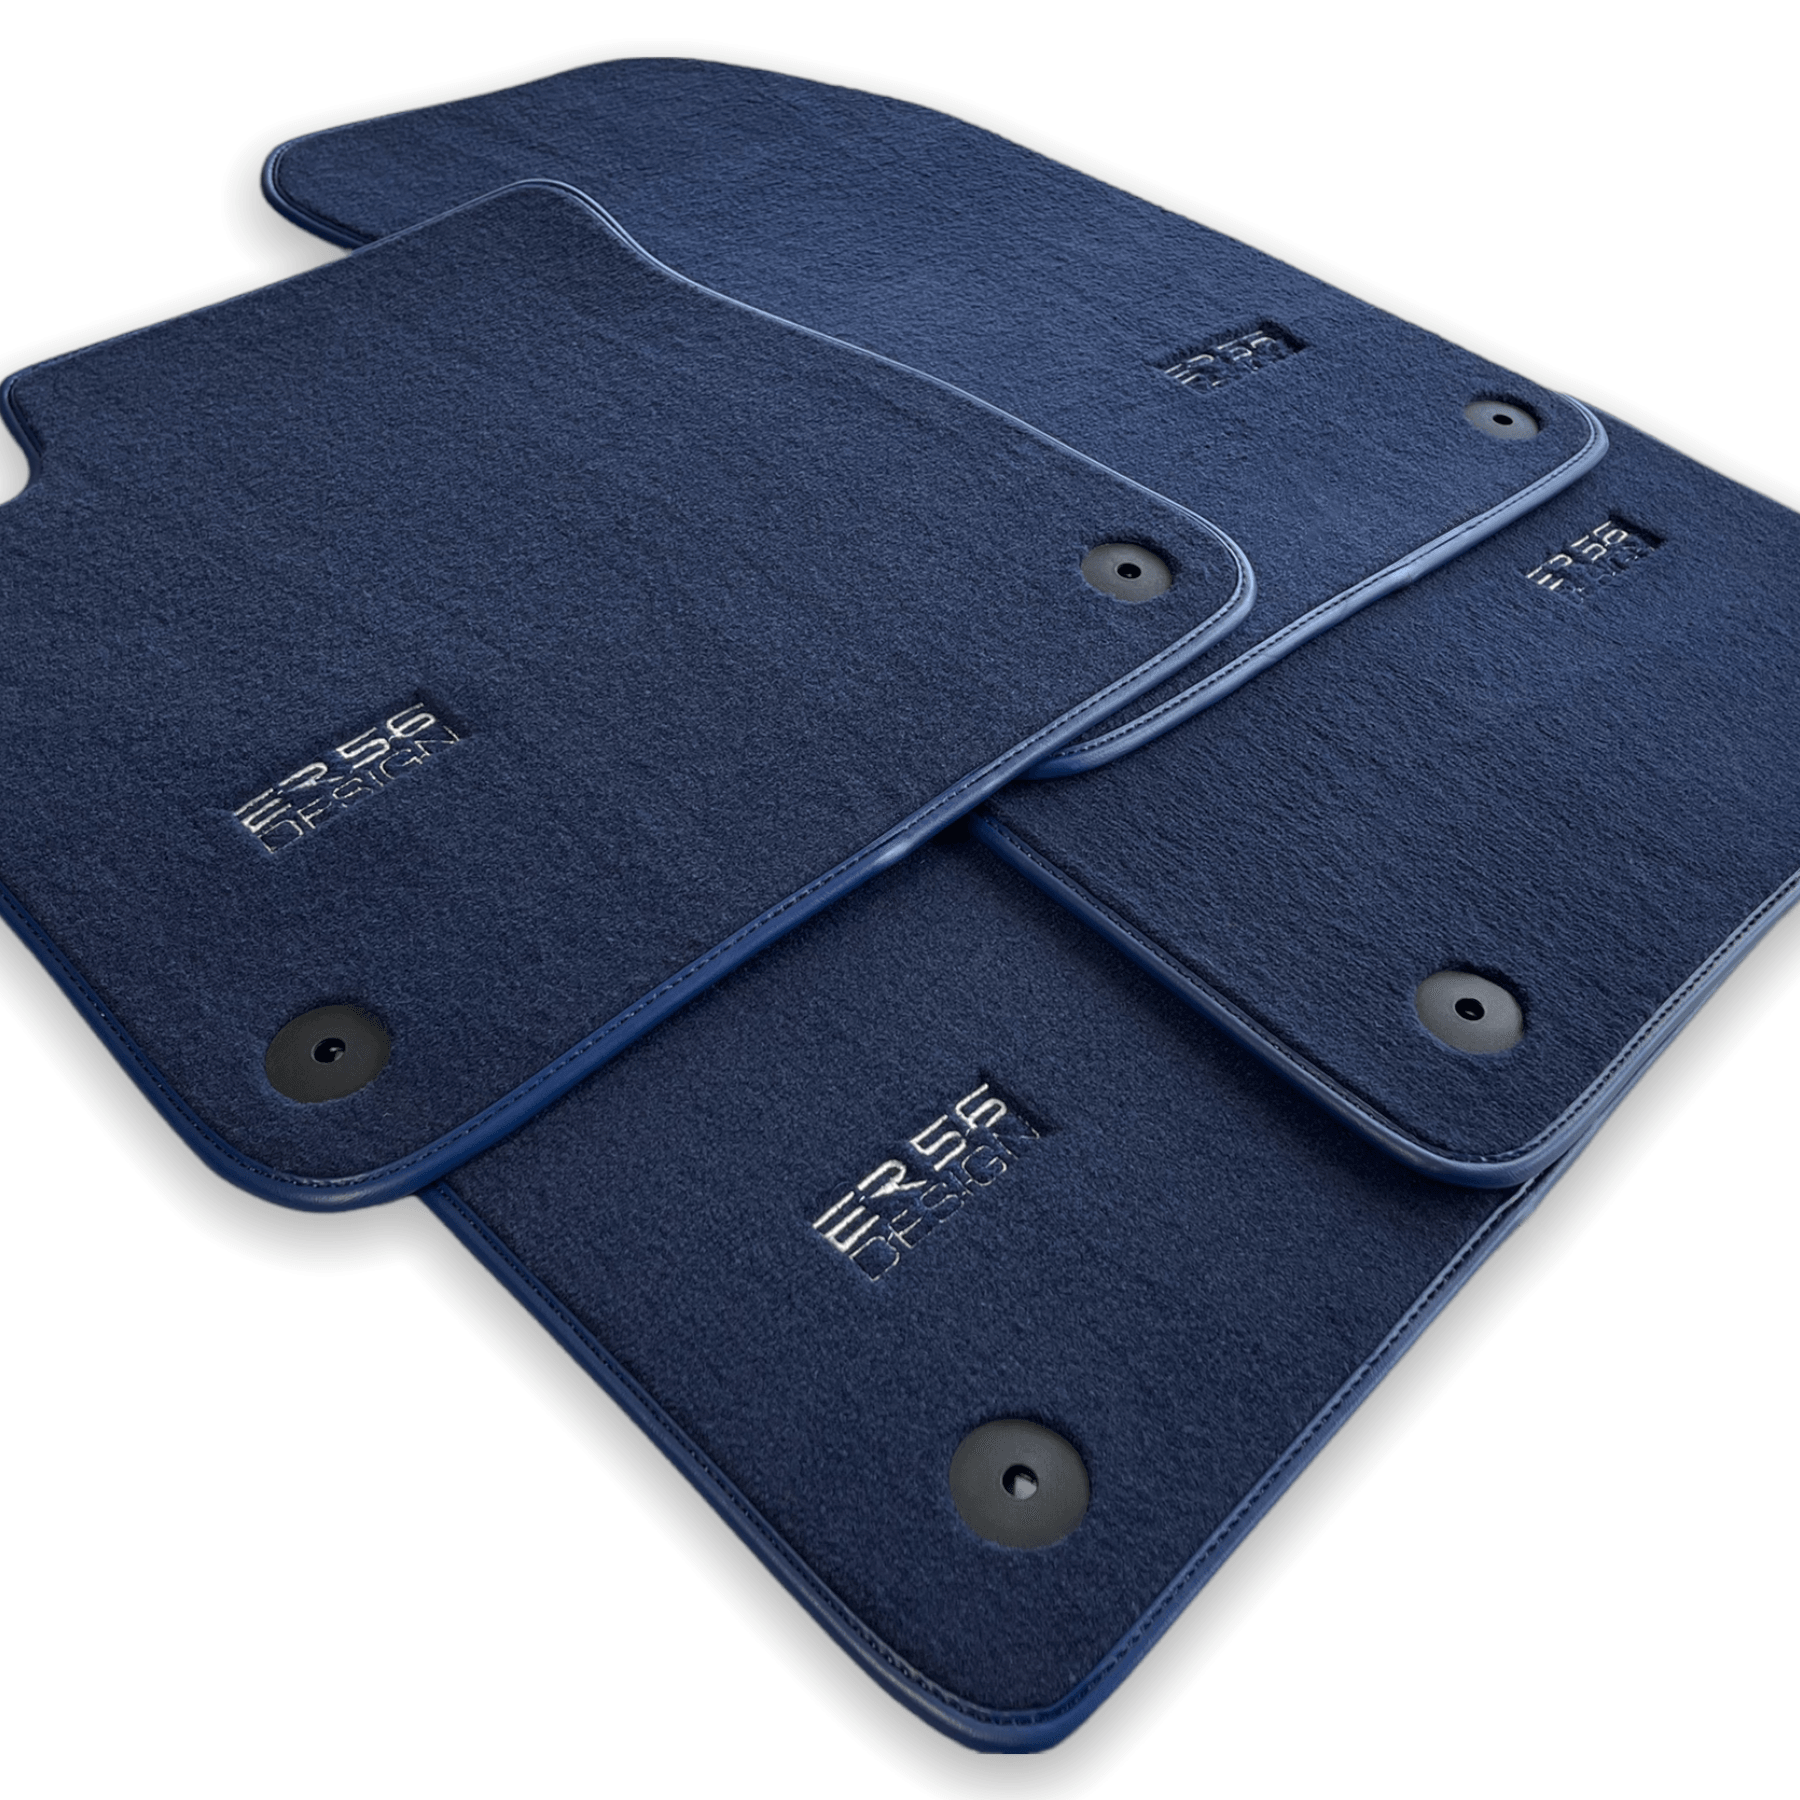 Dark Blue Floor Mats for Audi e-tron GT (2021-2024) | ER56 Design